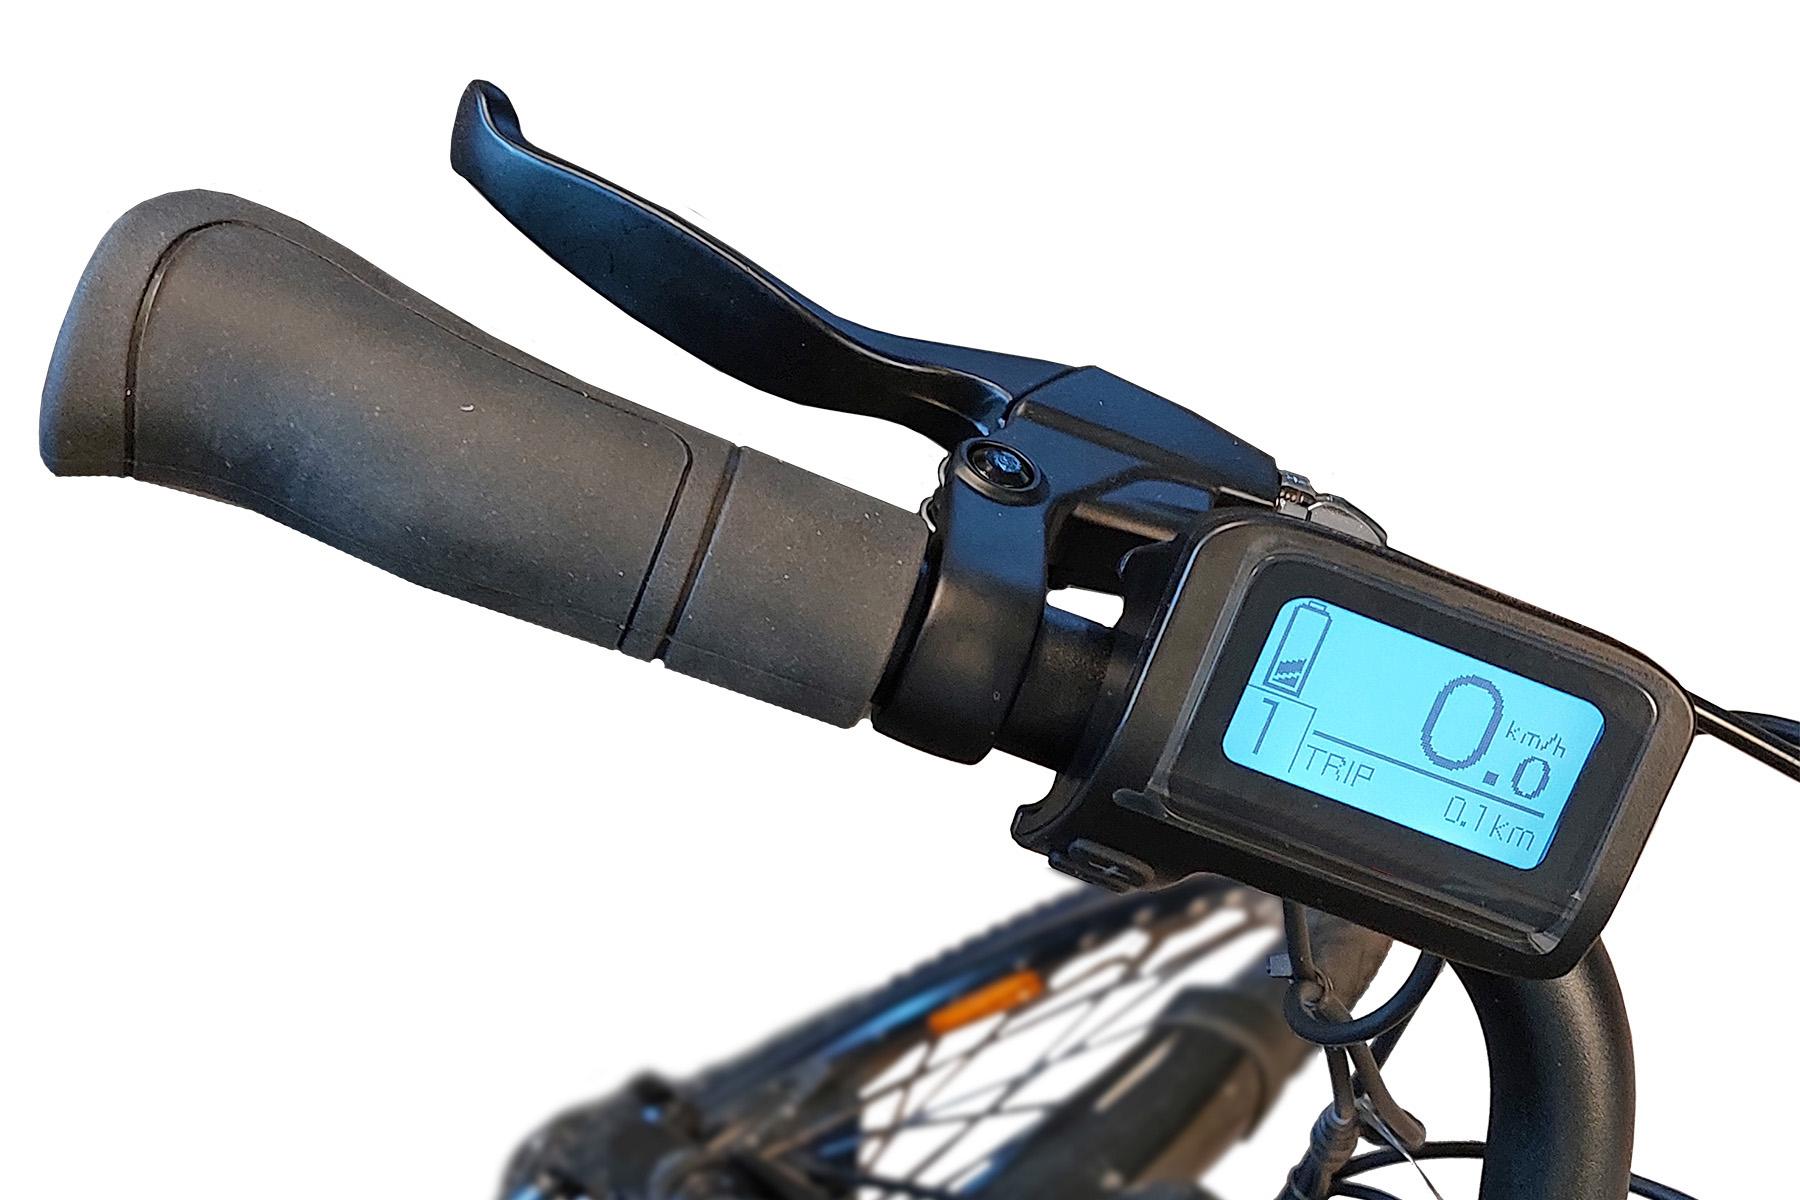 VILLETTE L\' Amant Citybike (Laufradgröße: 28 Rahmenhöhe: 48 Zoll, Wh, 470 schwarz) cm, Damen-Rad